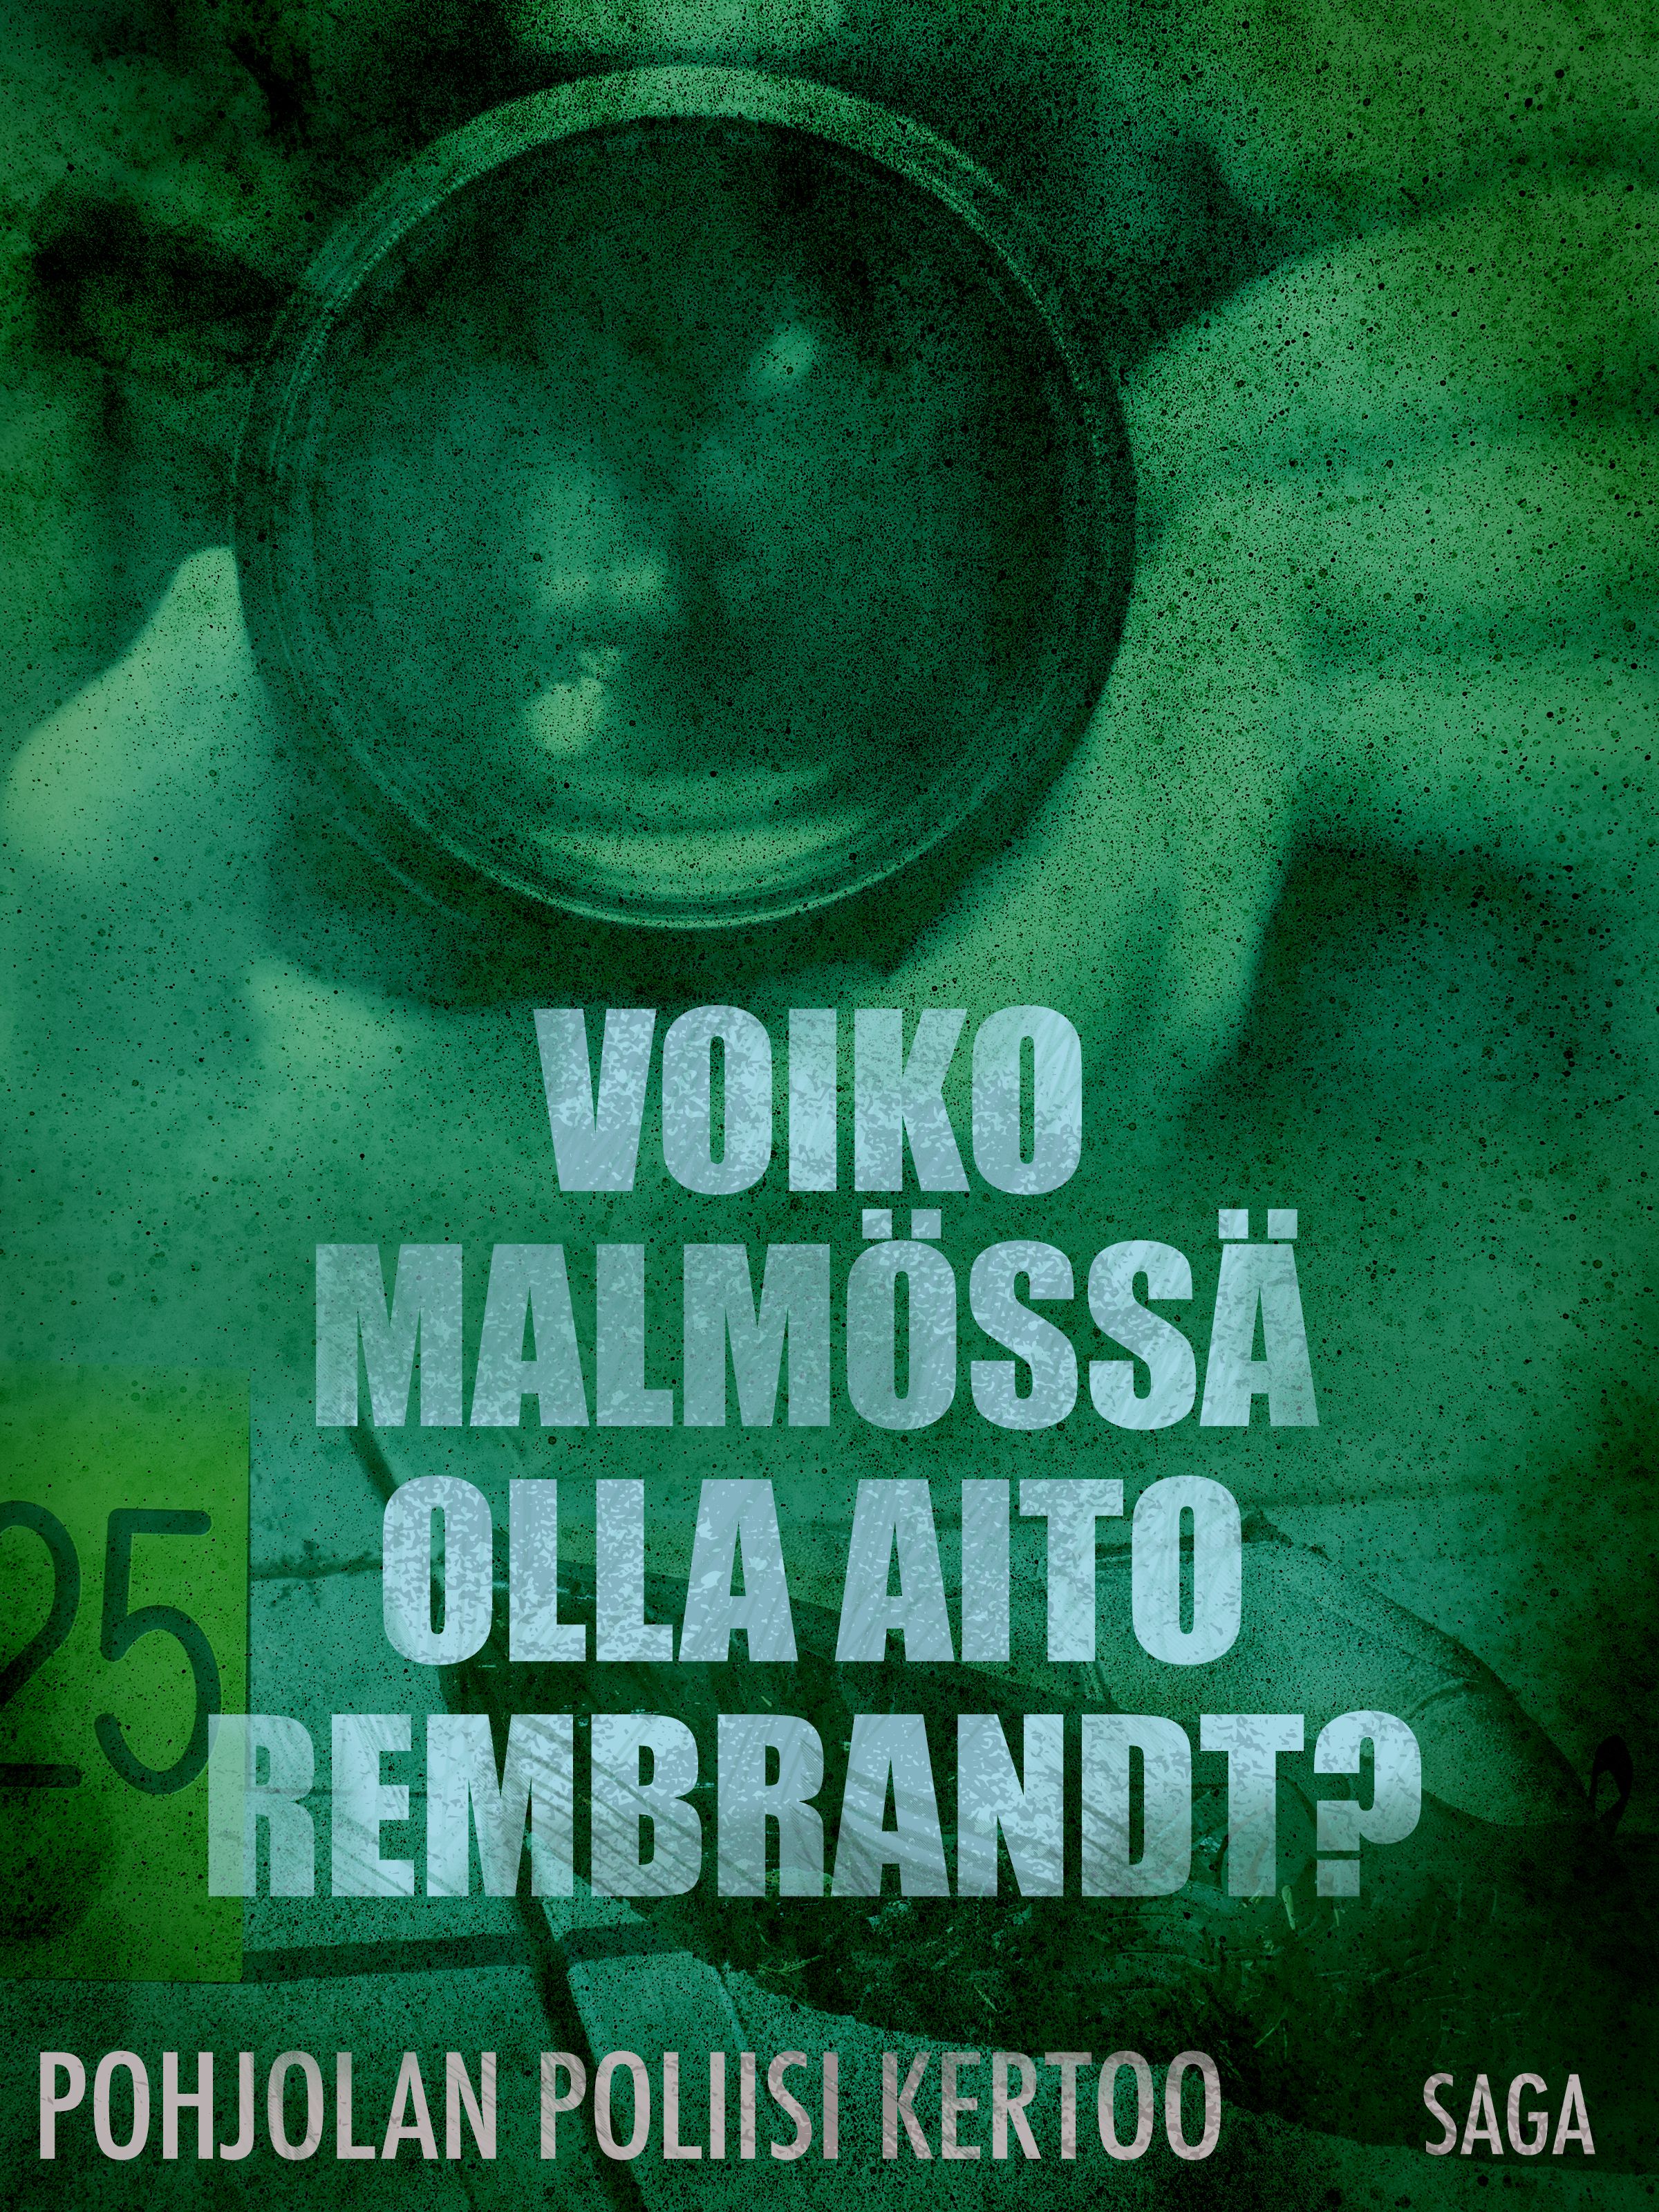 Voiko Malmössä olla aito Rembrandt?, e-bok av Eri Tekijöitä